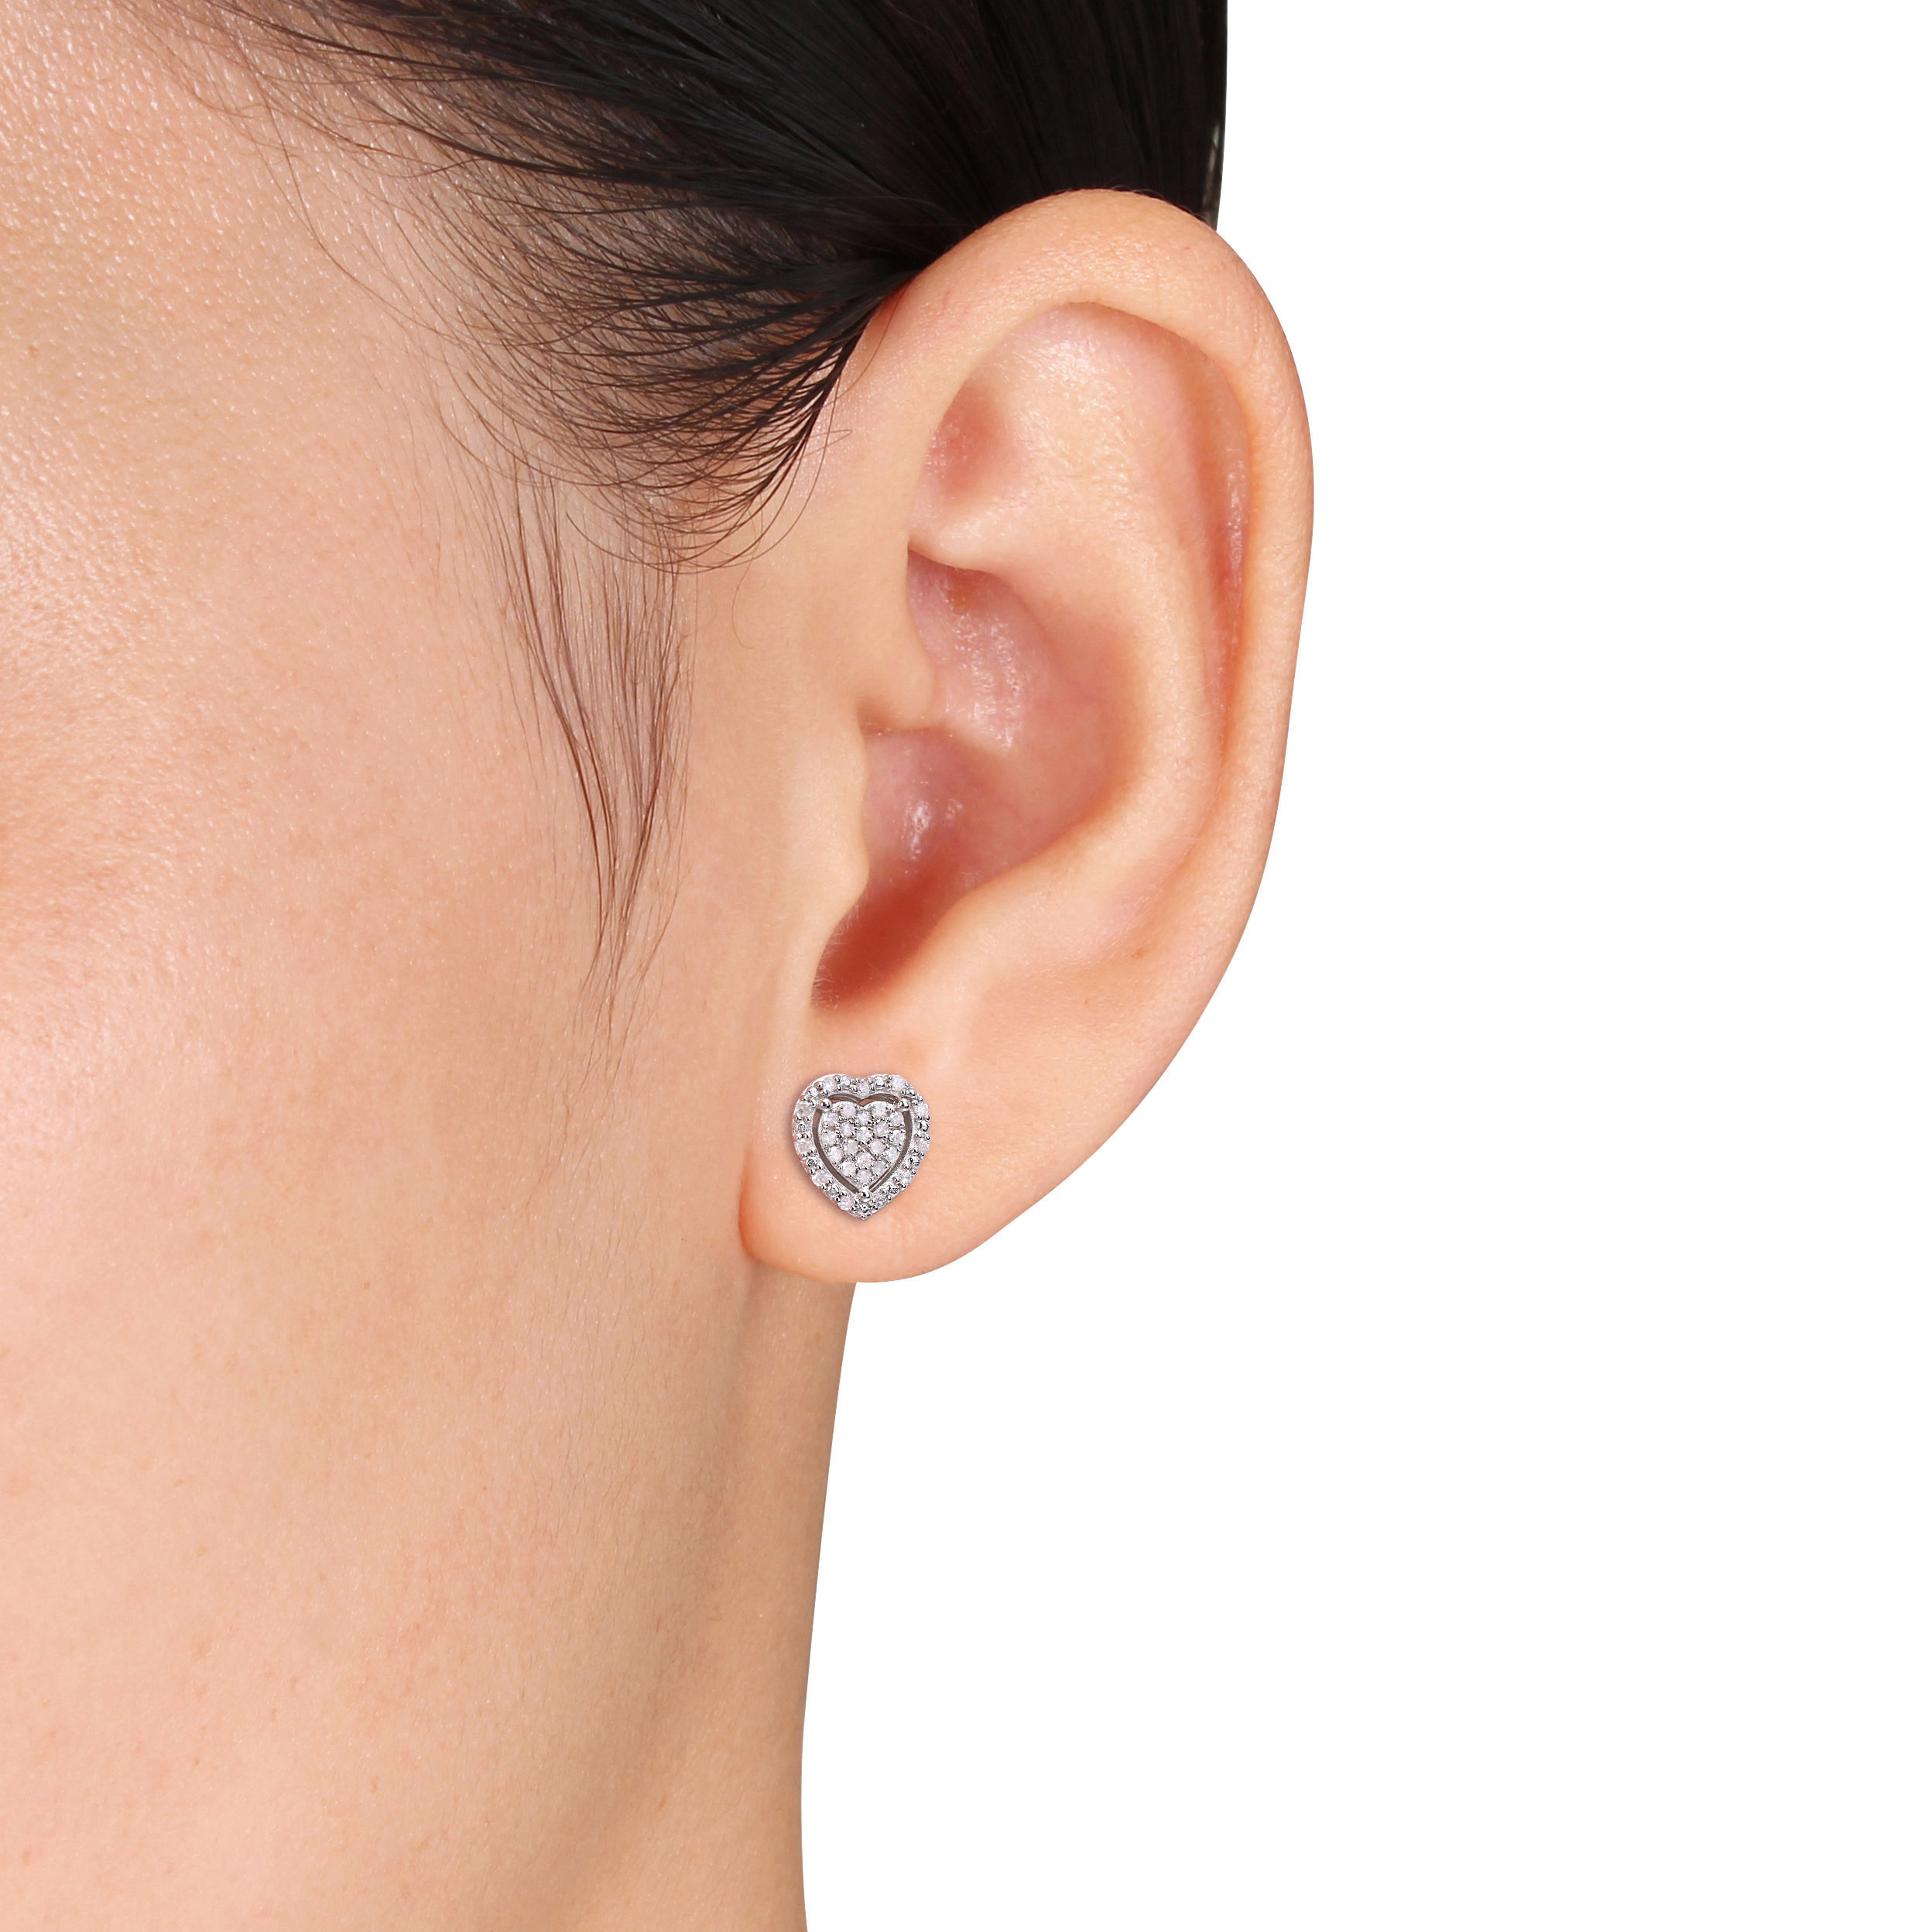 1/3 CT TW Diamond Heart Halo Stud Earrings in Sterling Silver